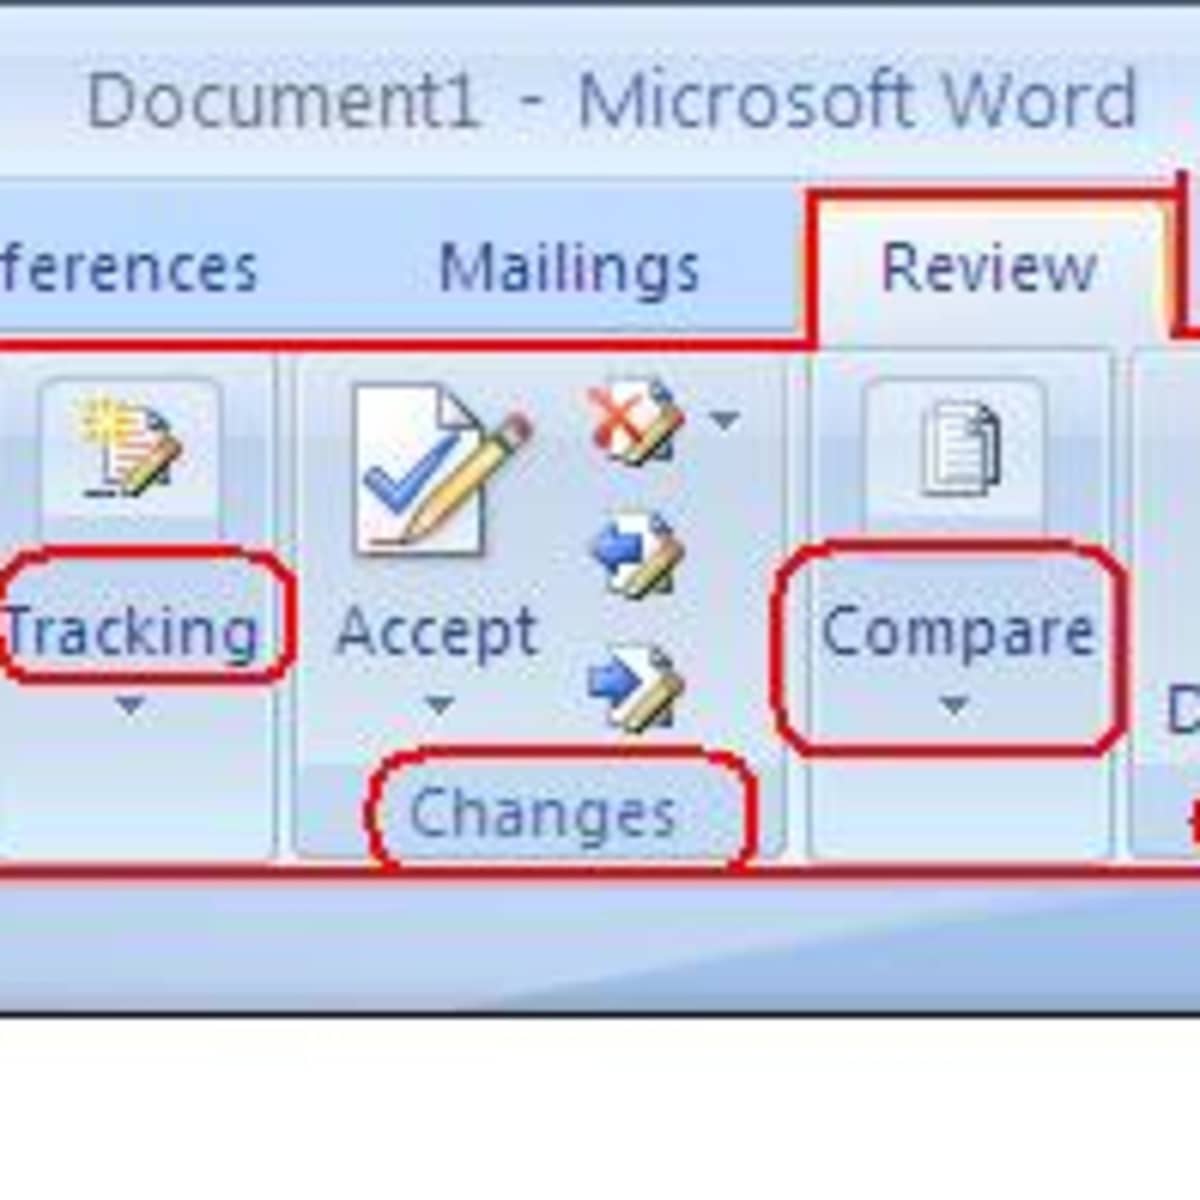 Tab Đánh giá trong Microsoft Office Word 2007 là một công cụ hữu ích để giúp bạn đánh giá và sửa lỗi trong tài liệu của mình. Bạn có thể tìm thấy nó trên thanh menu và áp dụng vào bất kỳ loại tài liệu nào để đảm bảo tính chính xác và giúp nâng cao chất lượng công việc. 